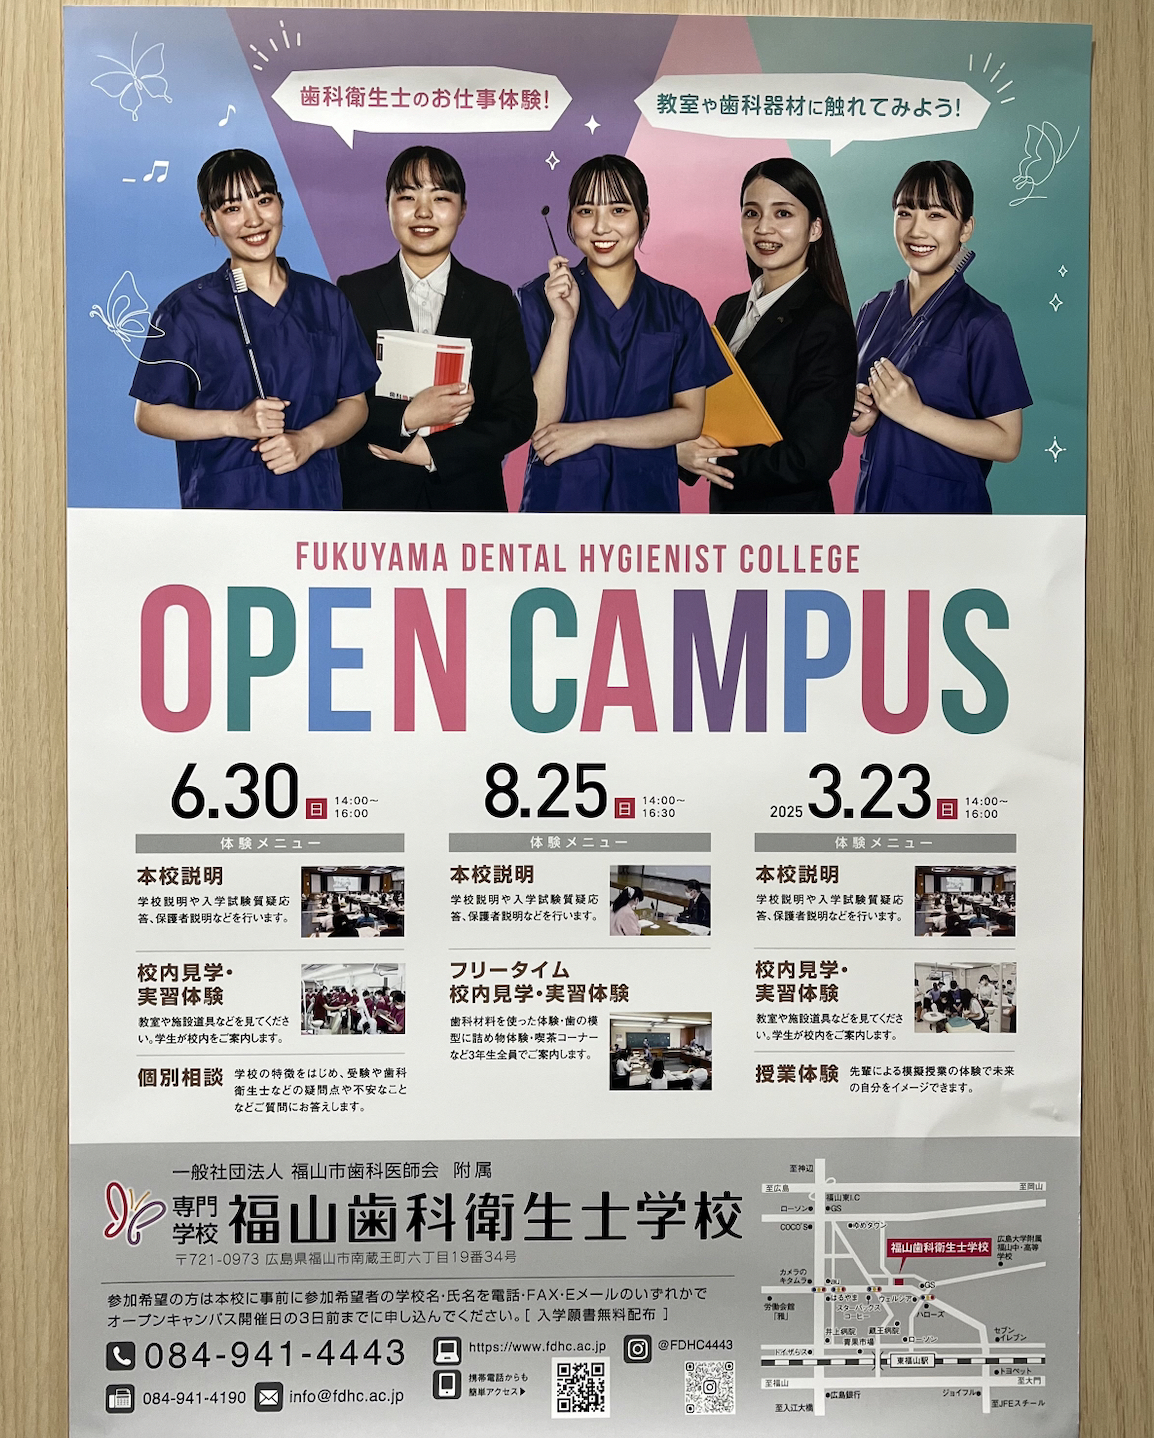 福山歯科衛生士学校のオープンキャンパスで歯科衛生生の仕事を知ることができます